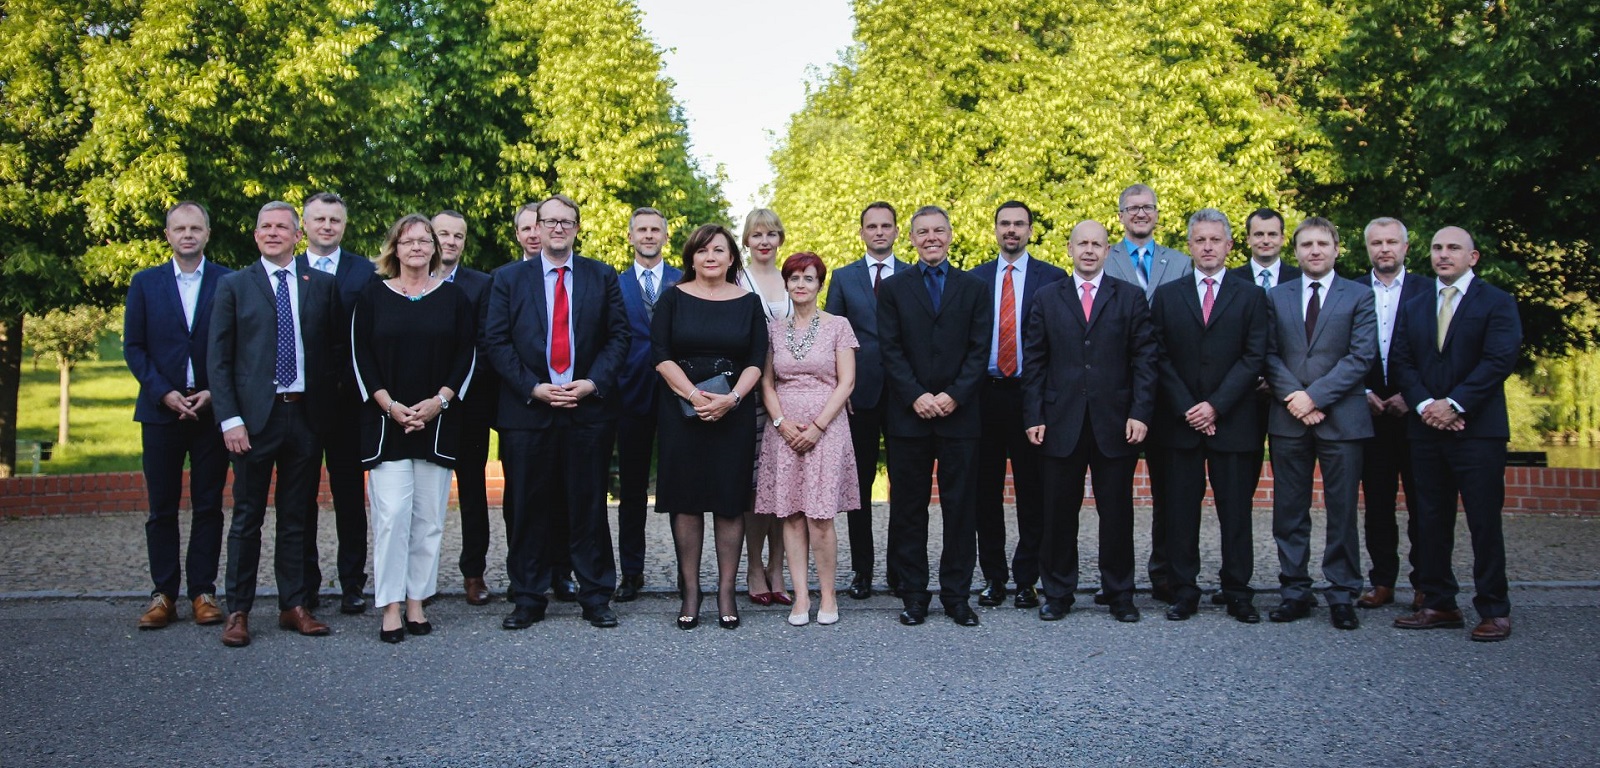 společné foto zástupců oceněných společností s místopředsedkyní vlády ČR a generální ředitelkou FS